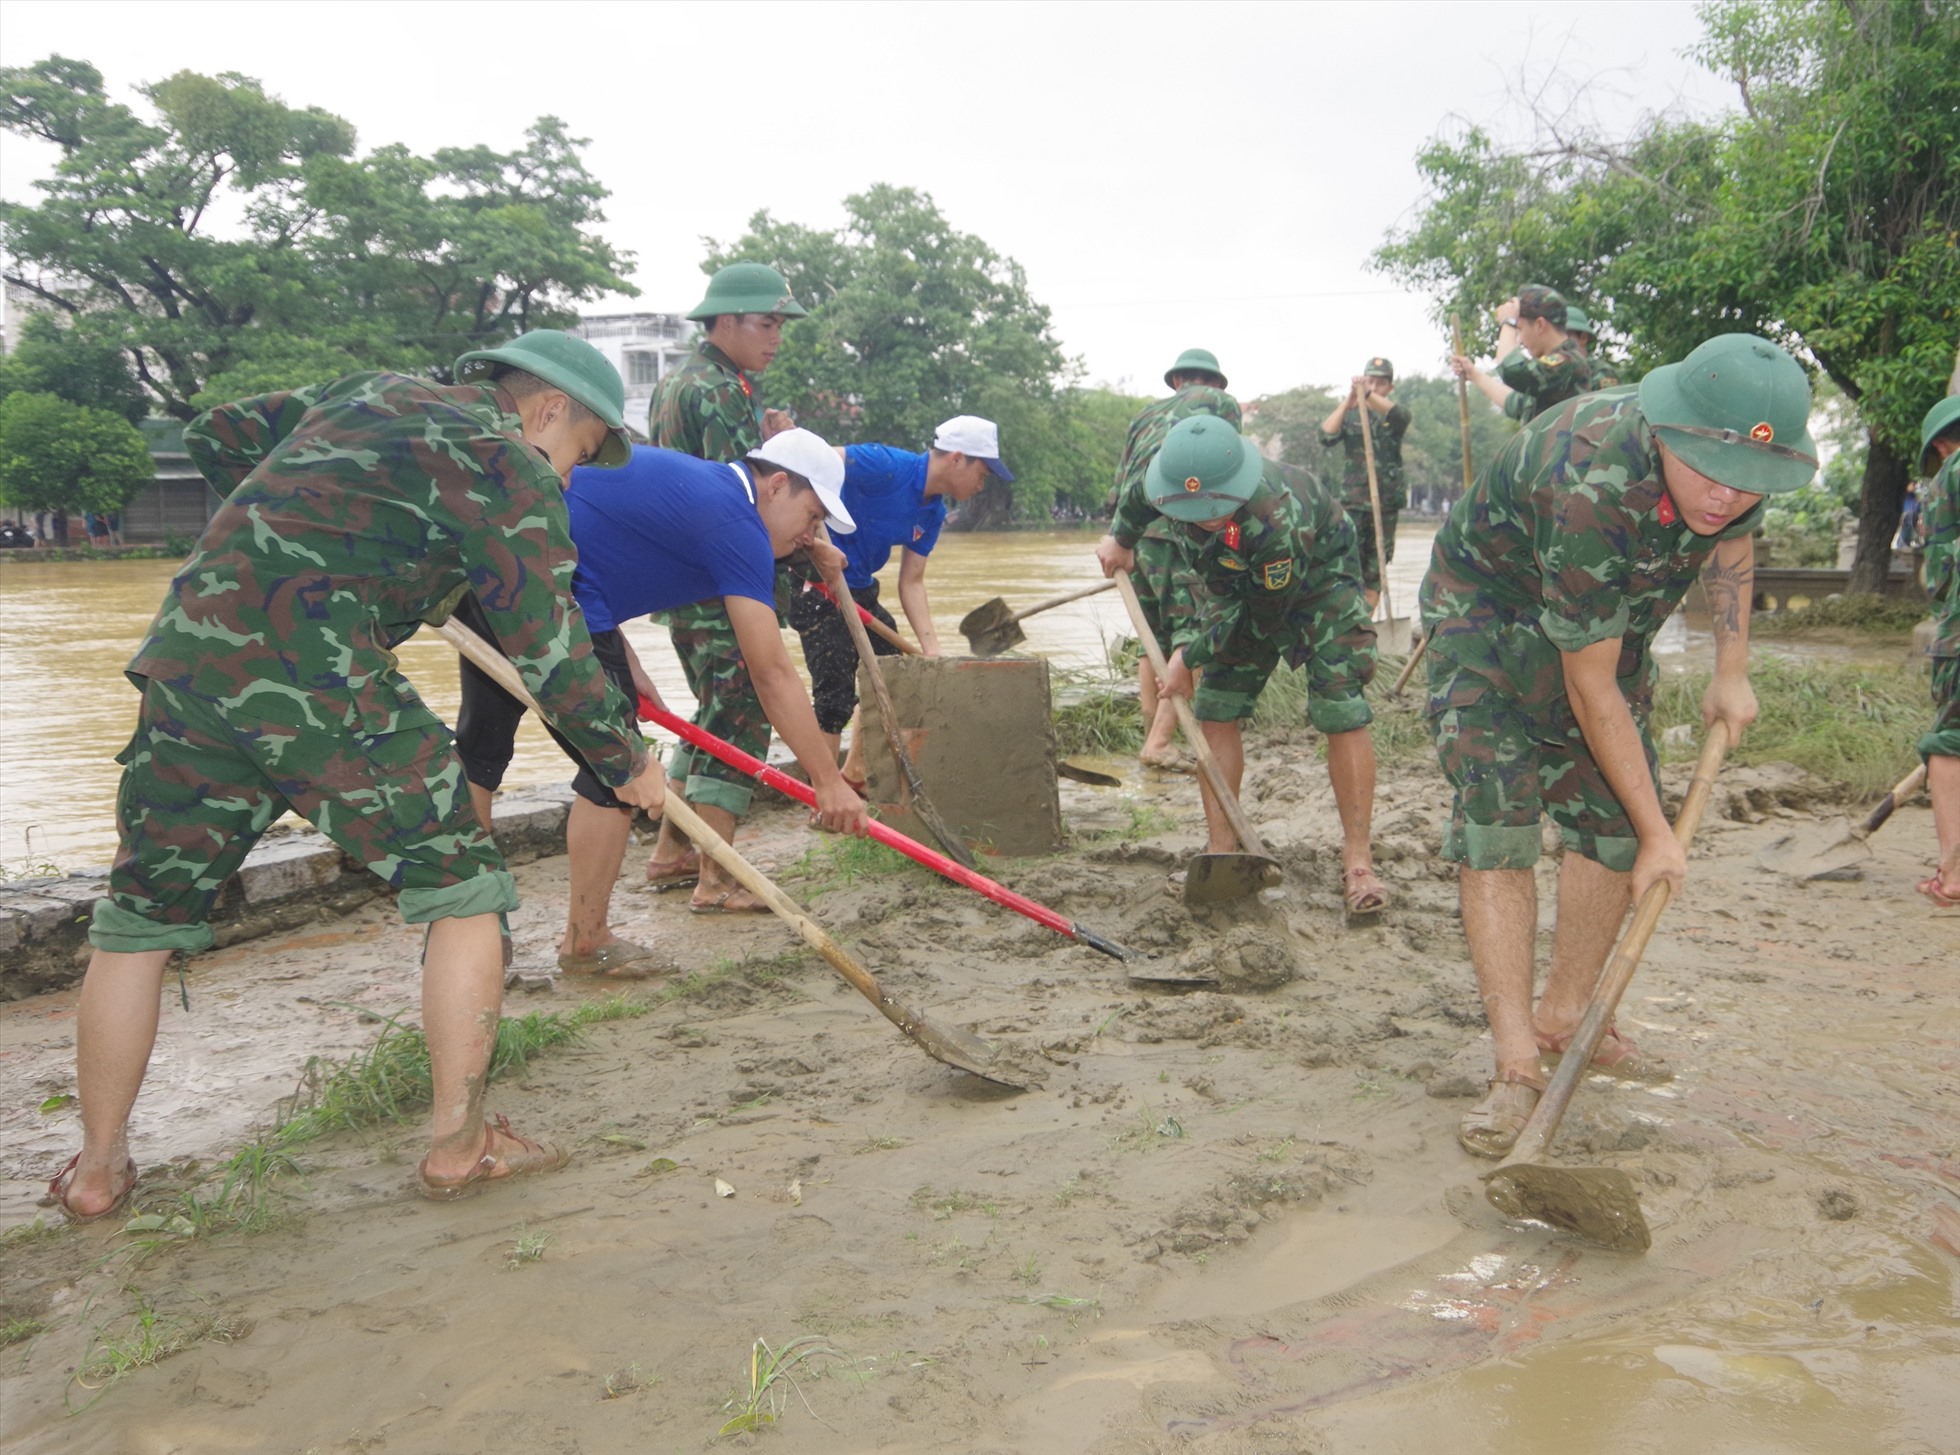 Ngoải ra, lực lượng công an, bộ đội cũng hỗ trợ người dân khắc phục những nơi bùn đất nhiều, ngập sâu.